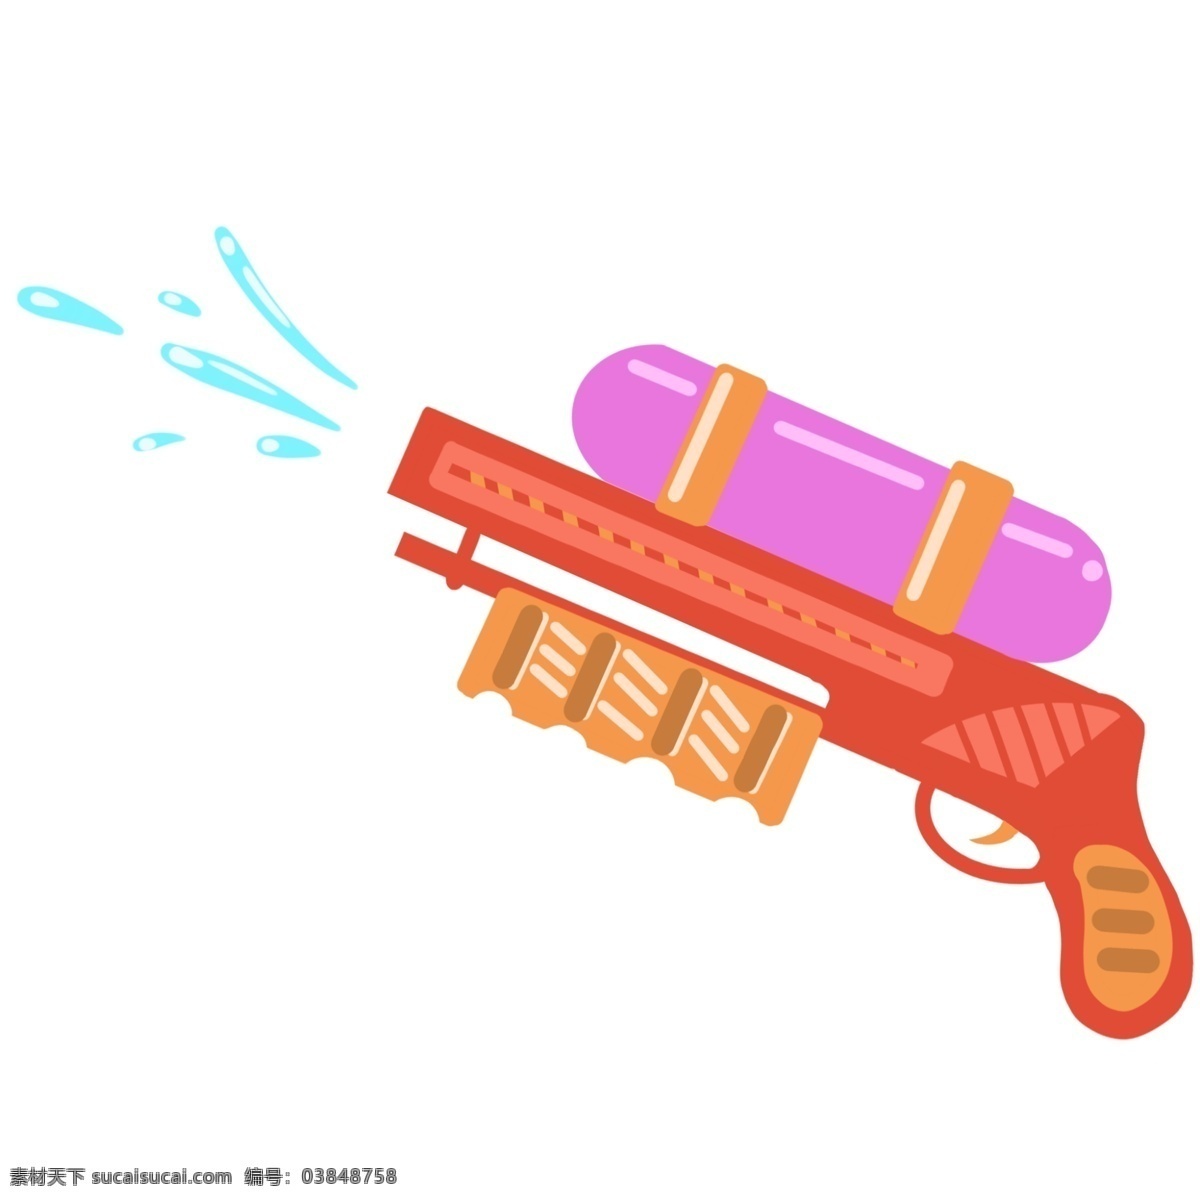 红色 水枪 装饰 插画 红色的水枪 玩具水枪 漂亮的水枪 儿童水枪 水枪装饰 水枪插画 立体水枪